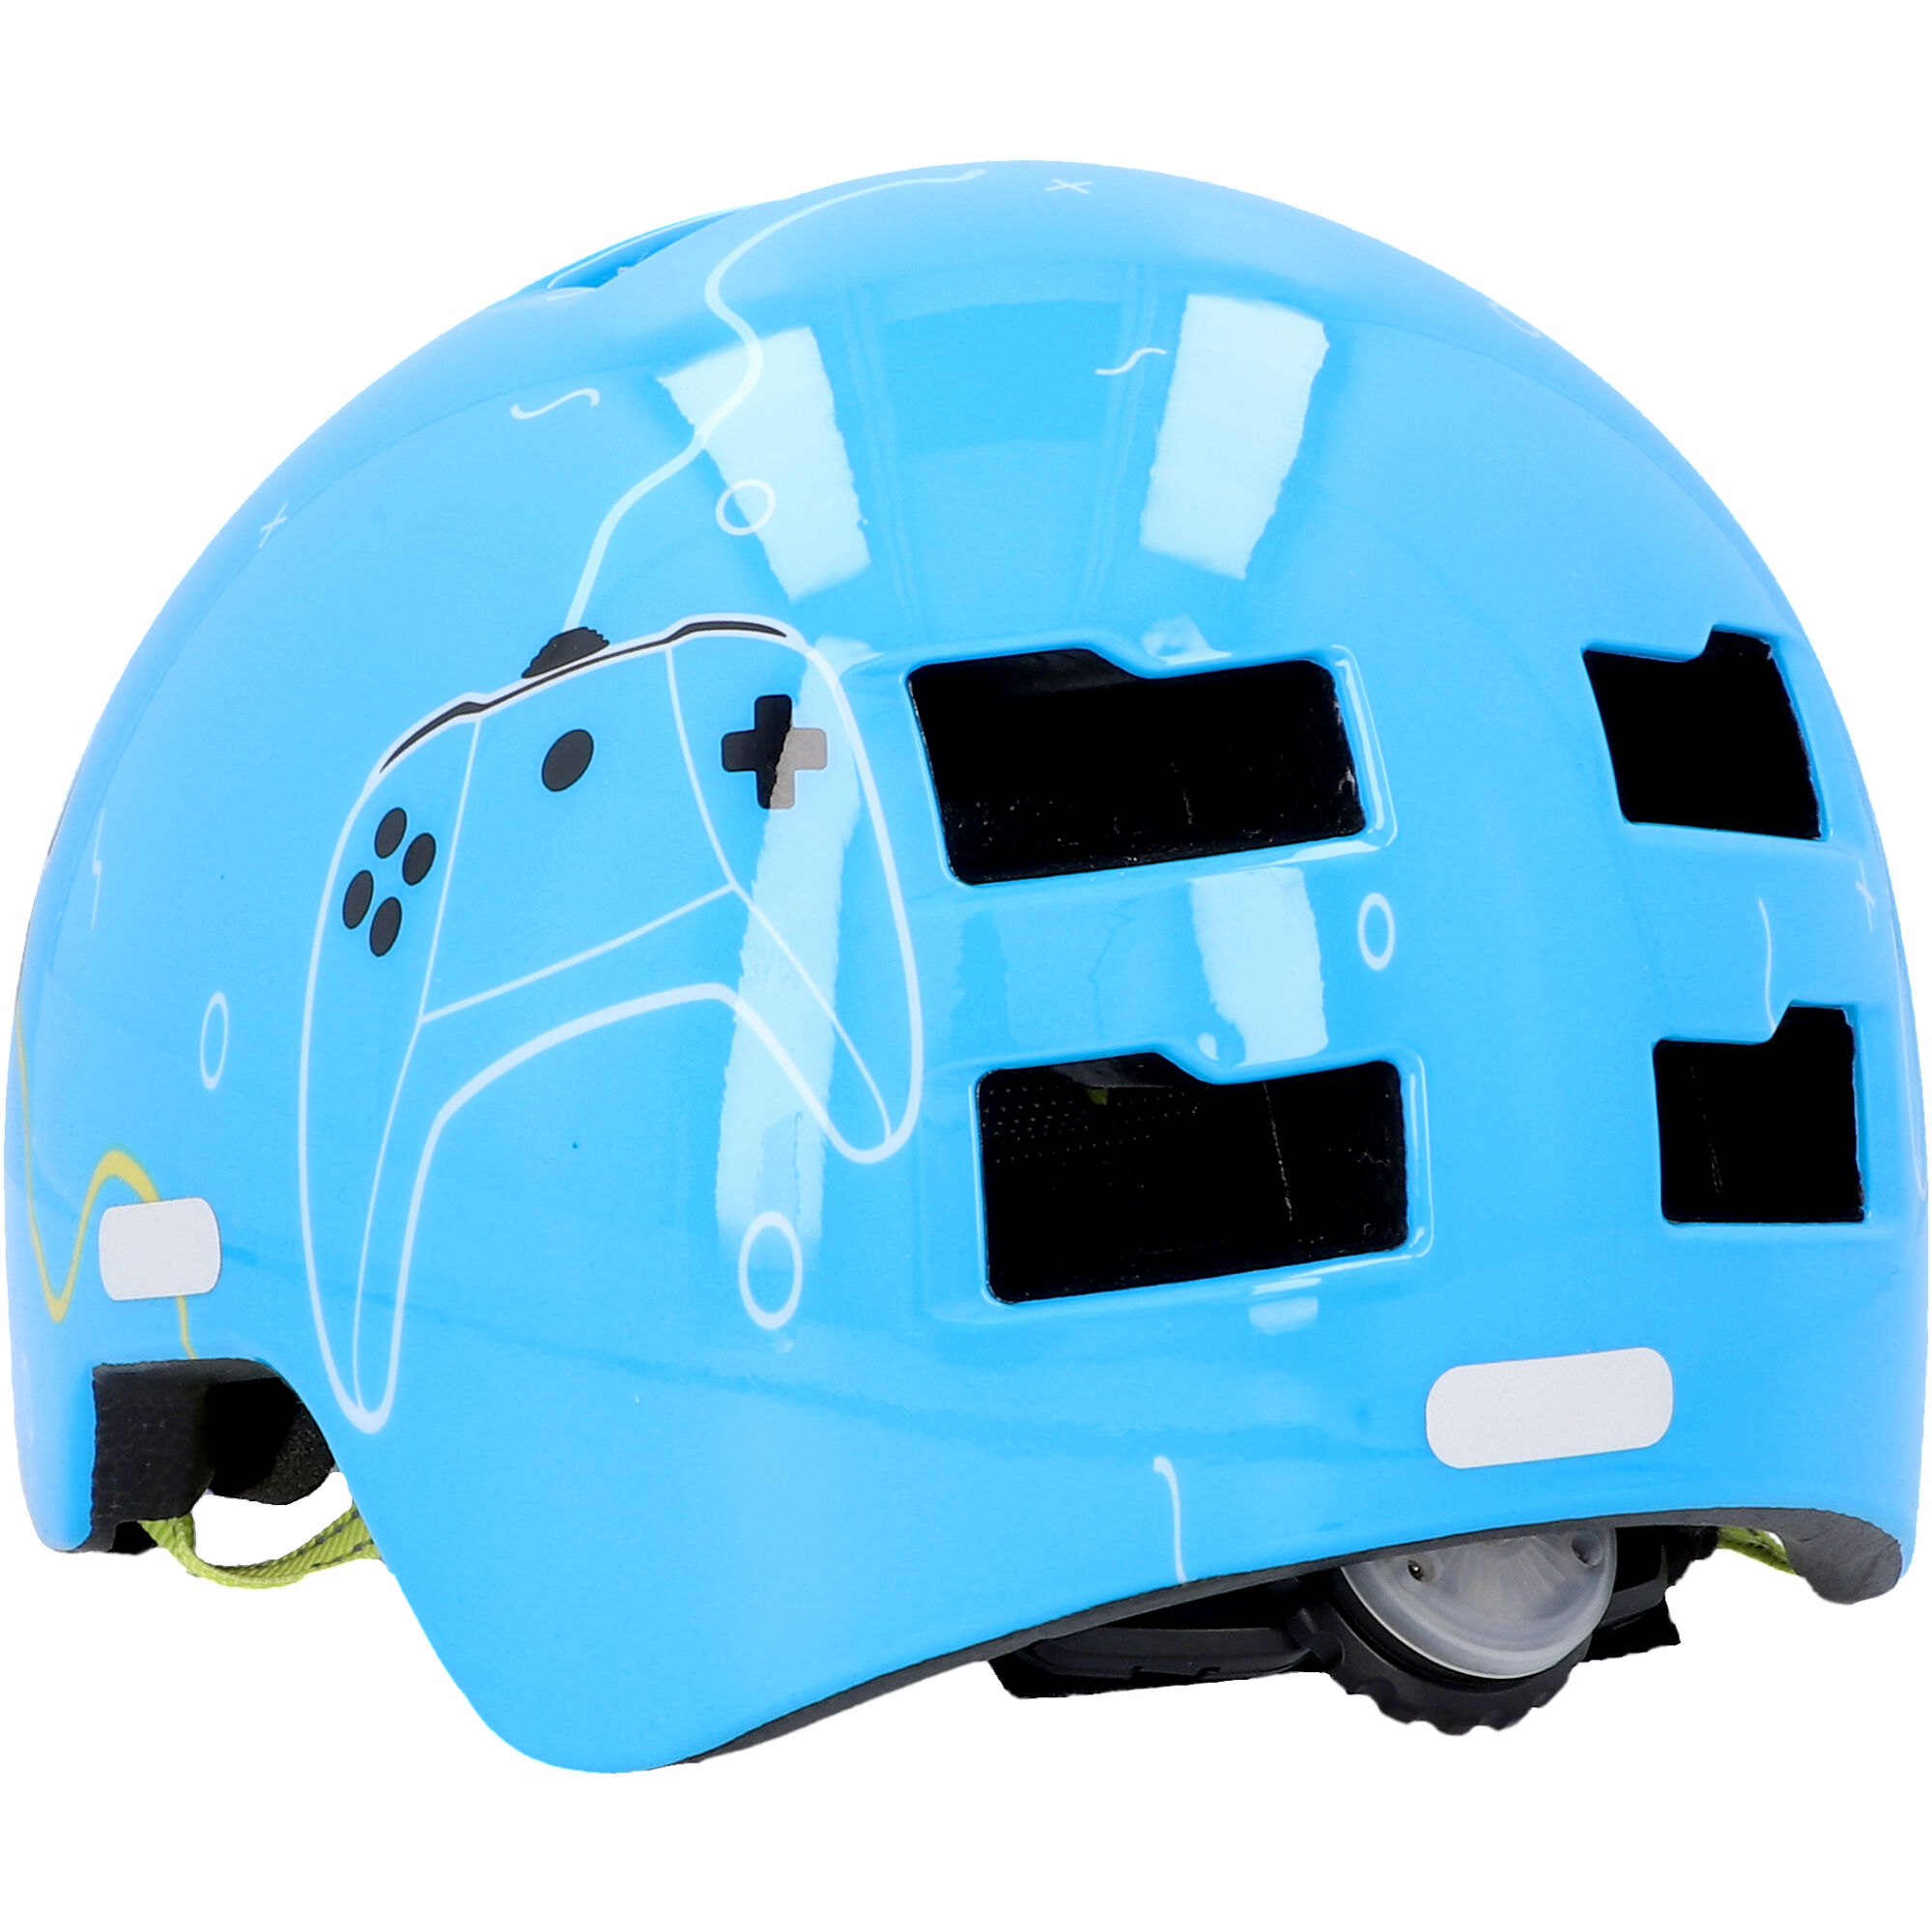 Fahrradhelm 'BMX Kinder Plus Game' blau S/M + product picture